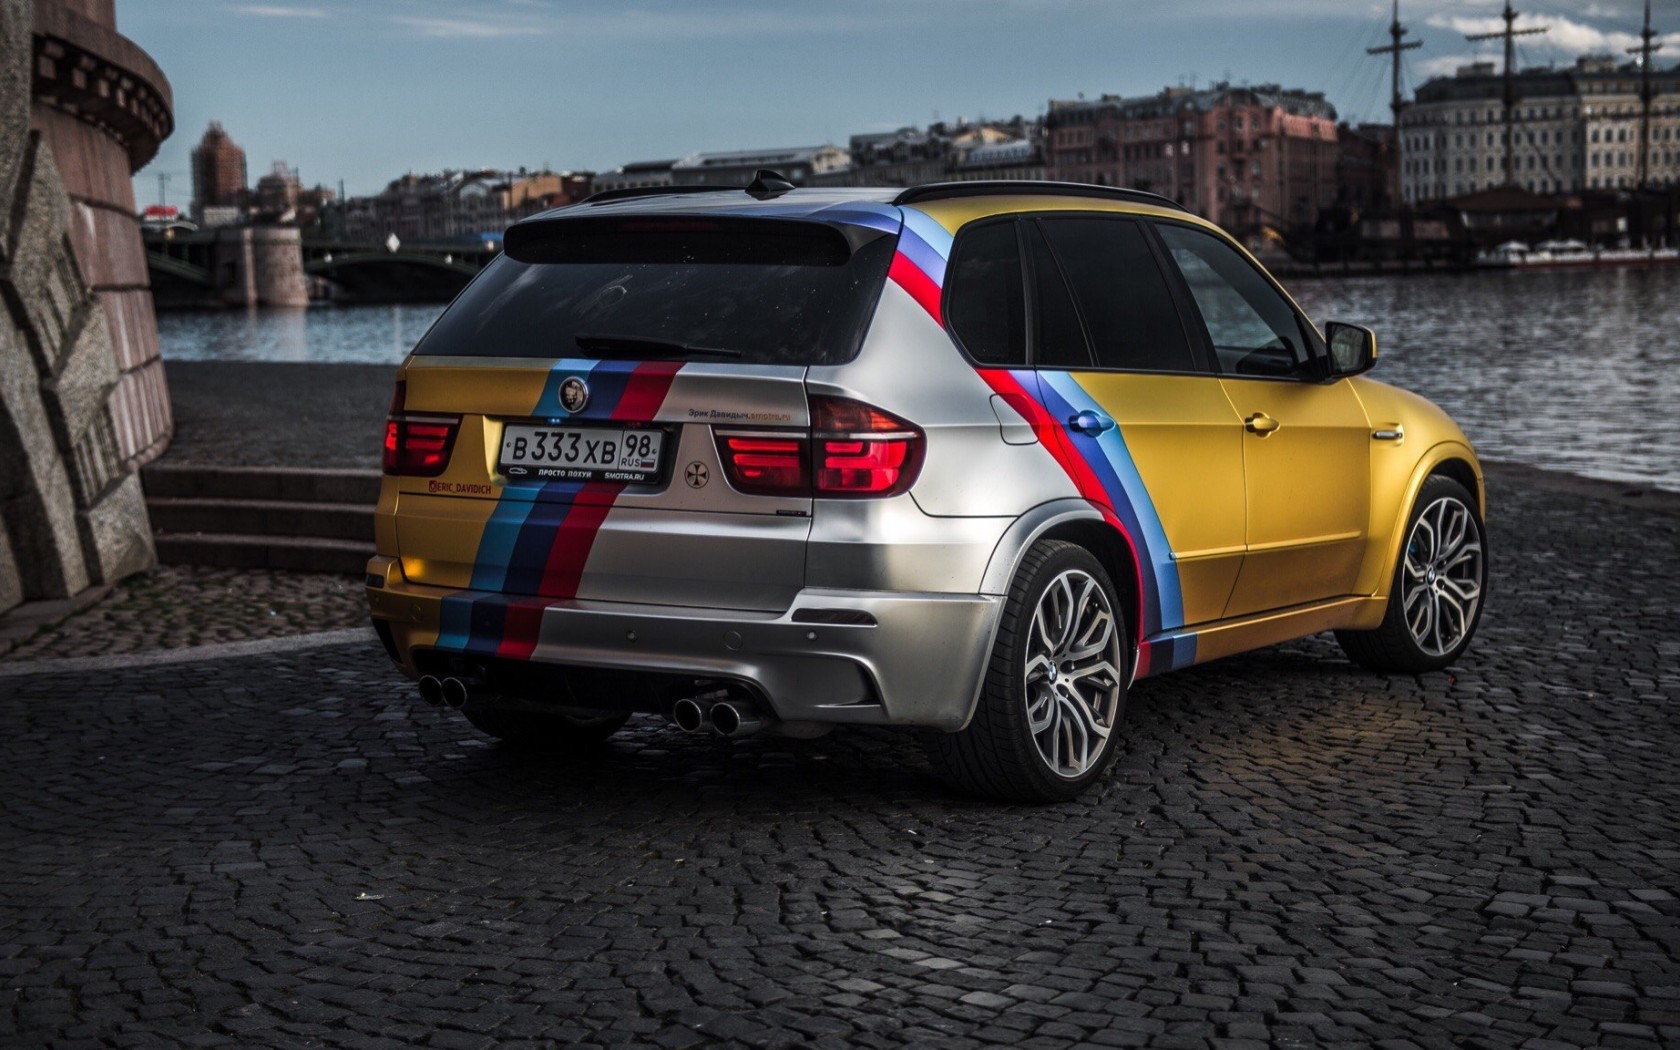 Тест-драйв от Давидыча. BMW X5M Gold Edition